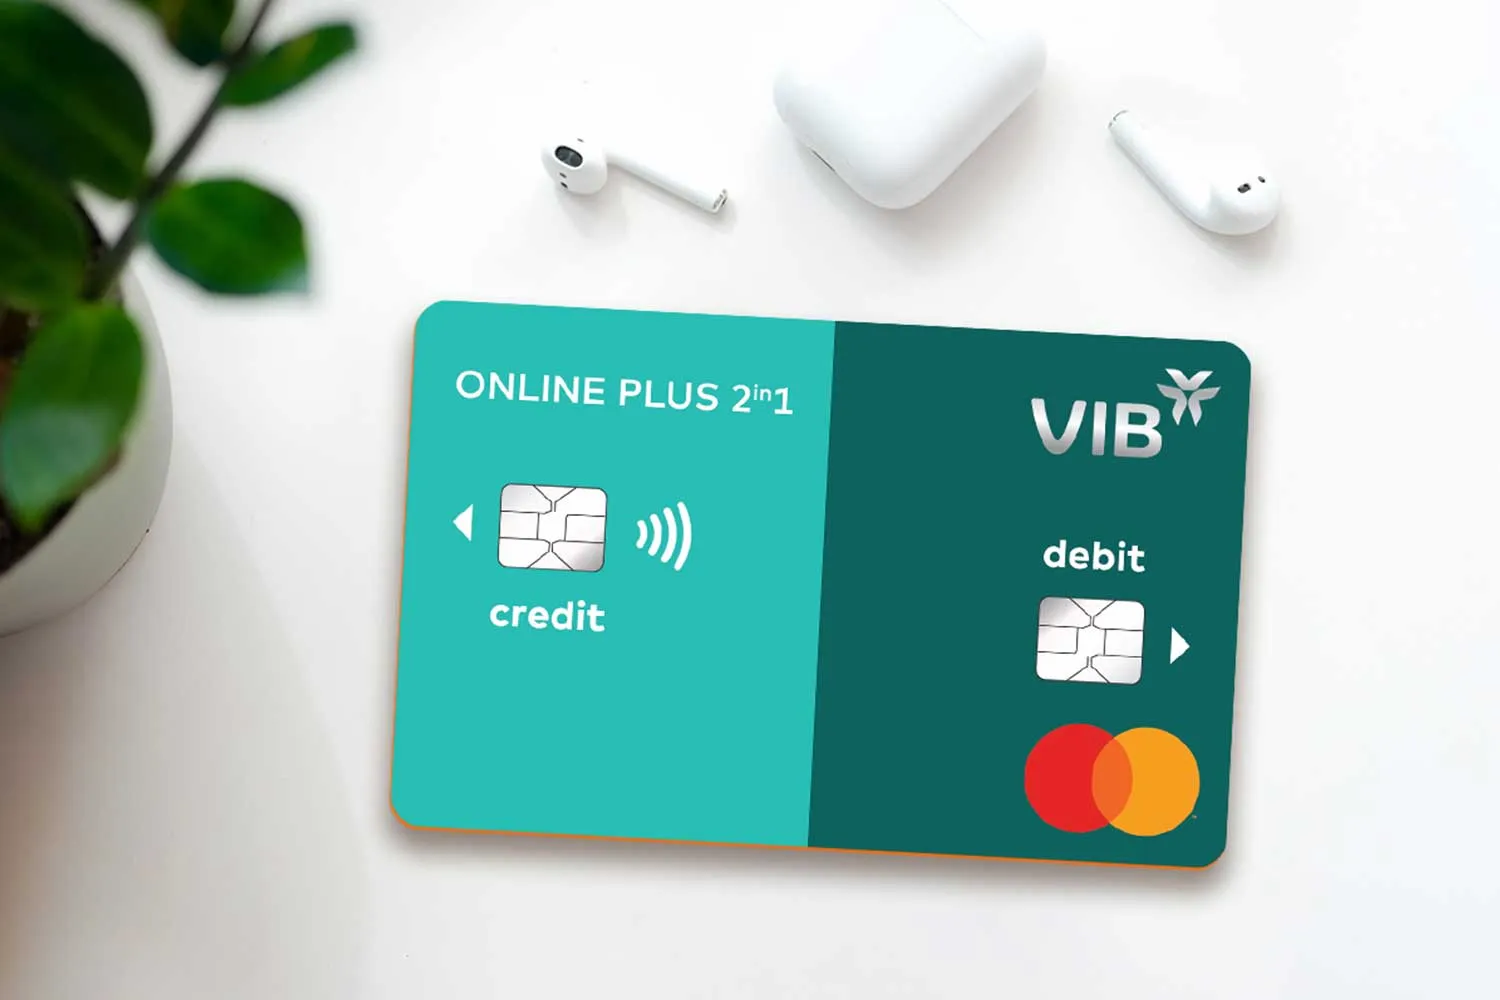 VIB Online Plus - Thẻ tích hợp tín dụng và ghi nợ đầu tiên tại Việt Nam